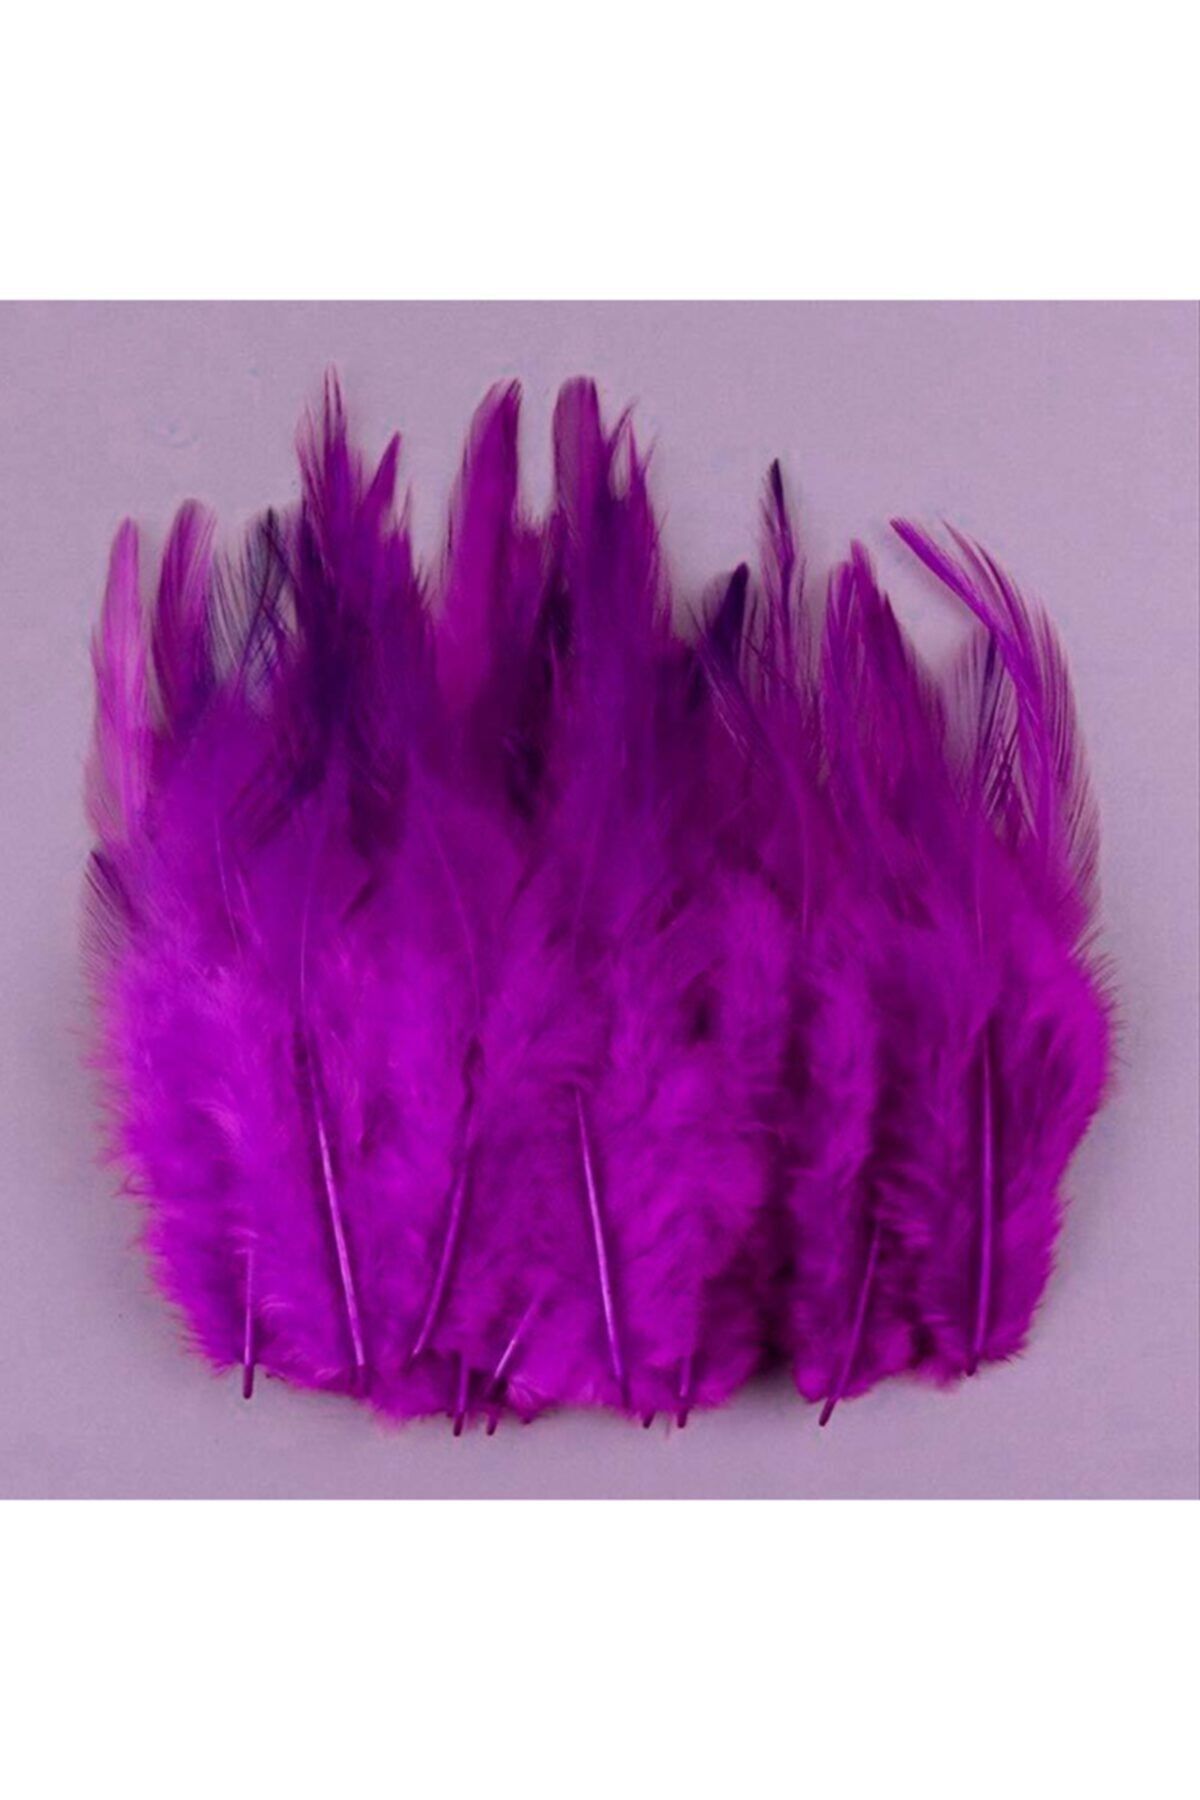 Aker Hediyelik 100lü Kuş Tüyü 15x2 100 Adet Şalgam Kuş Tüyü Dekoratif El Işi Süsleme Malzemeleri